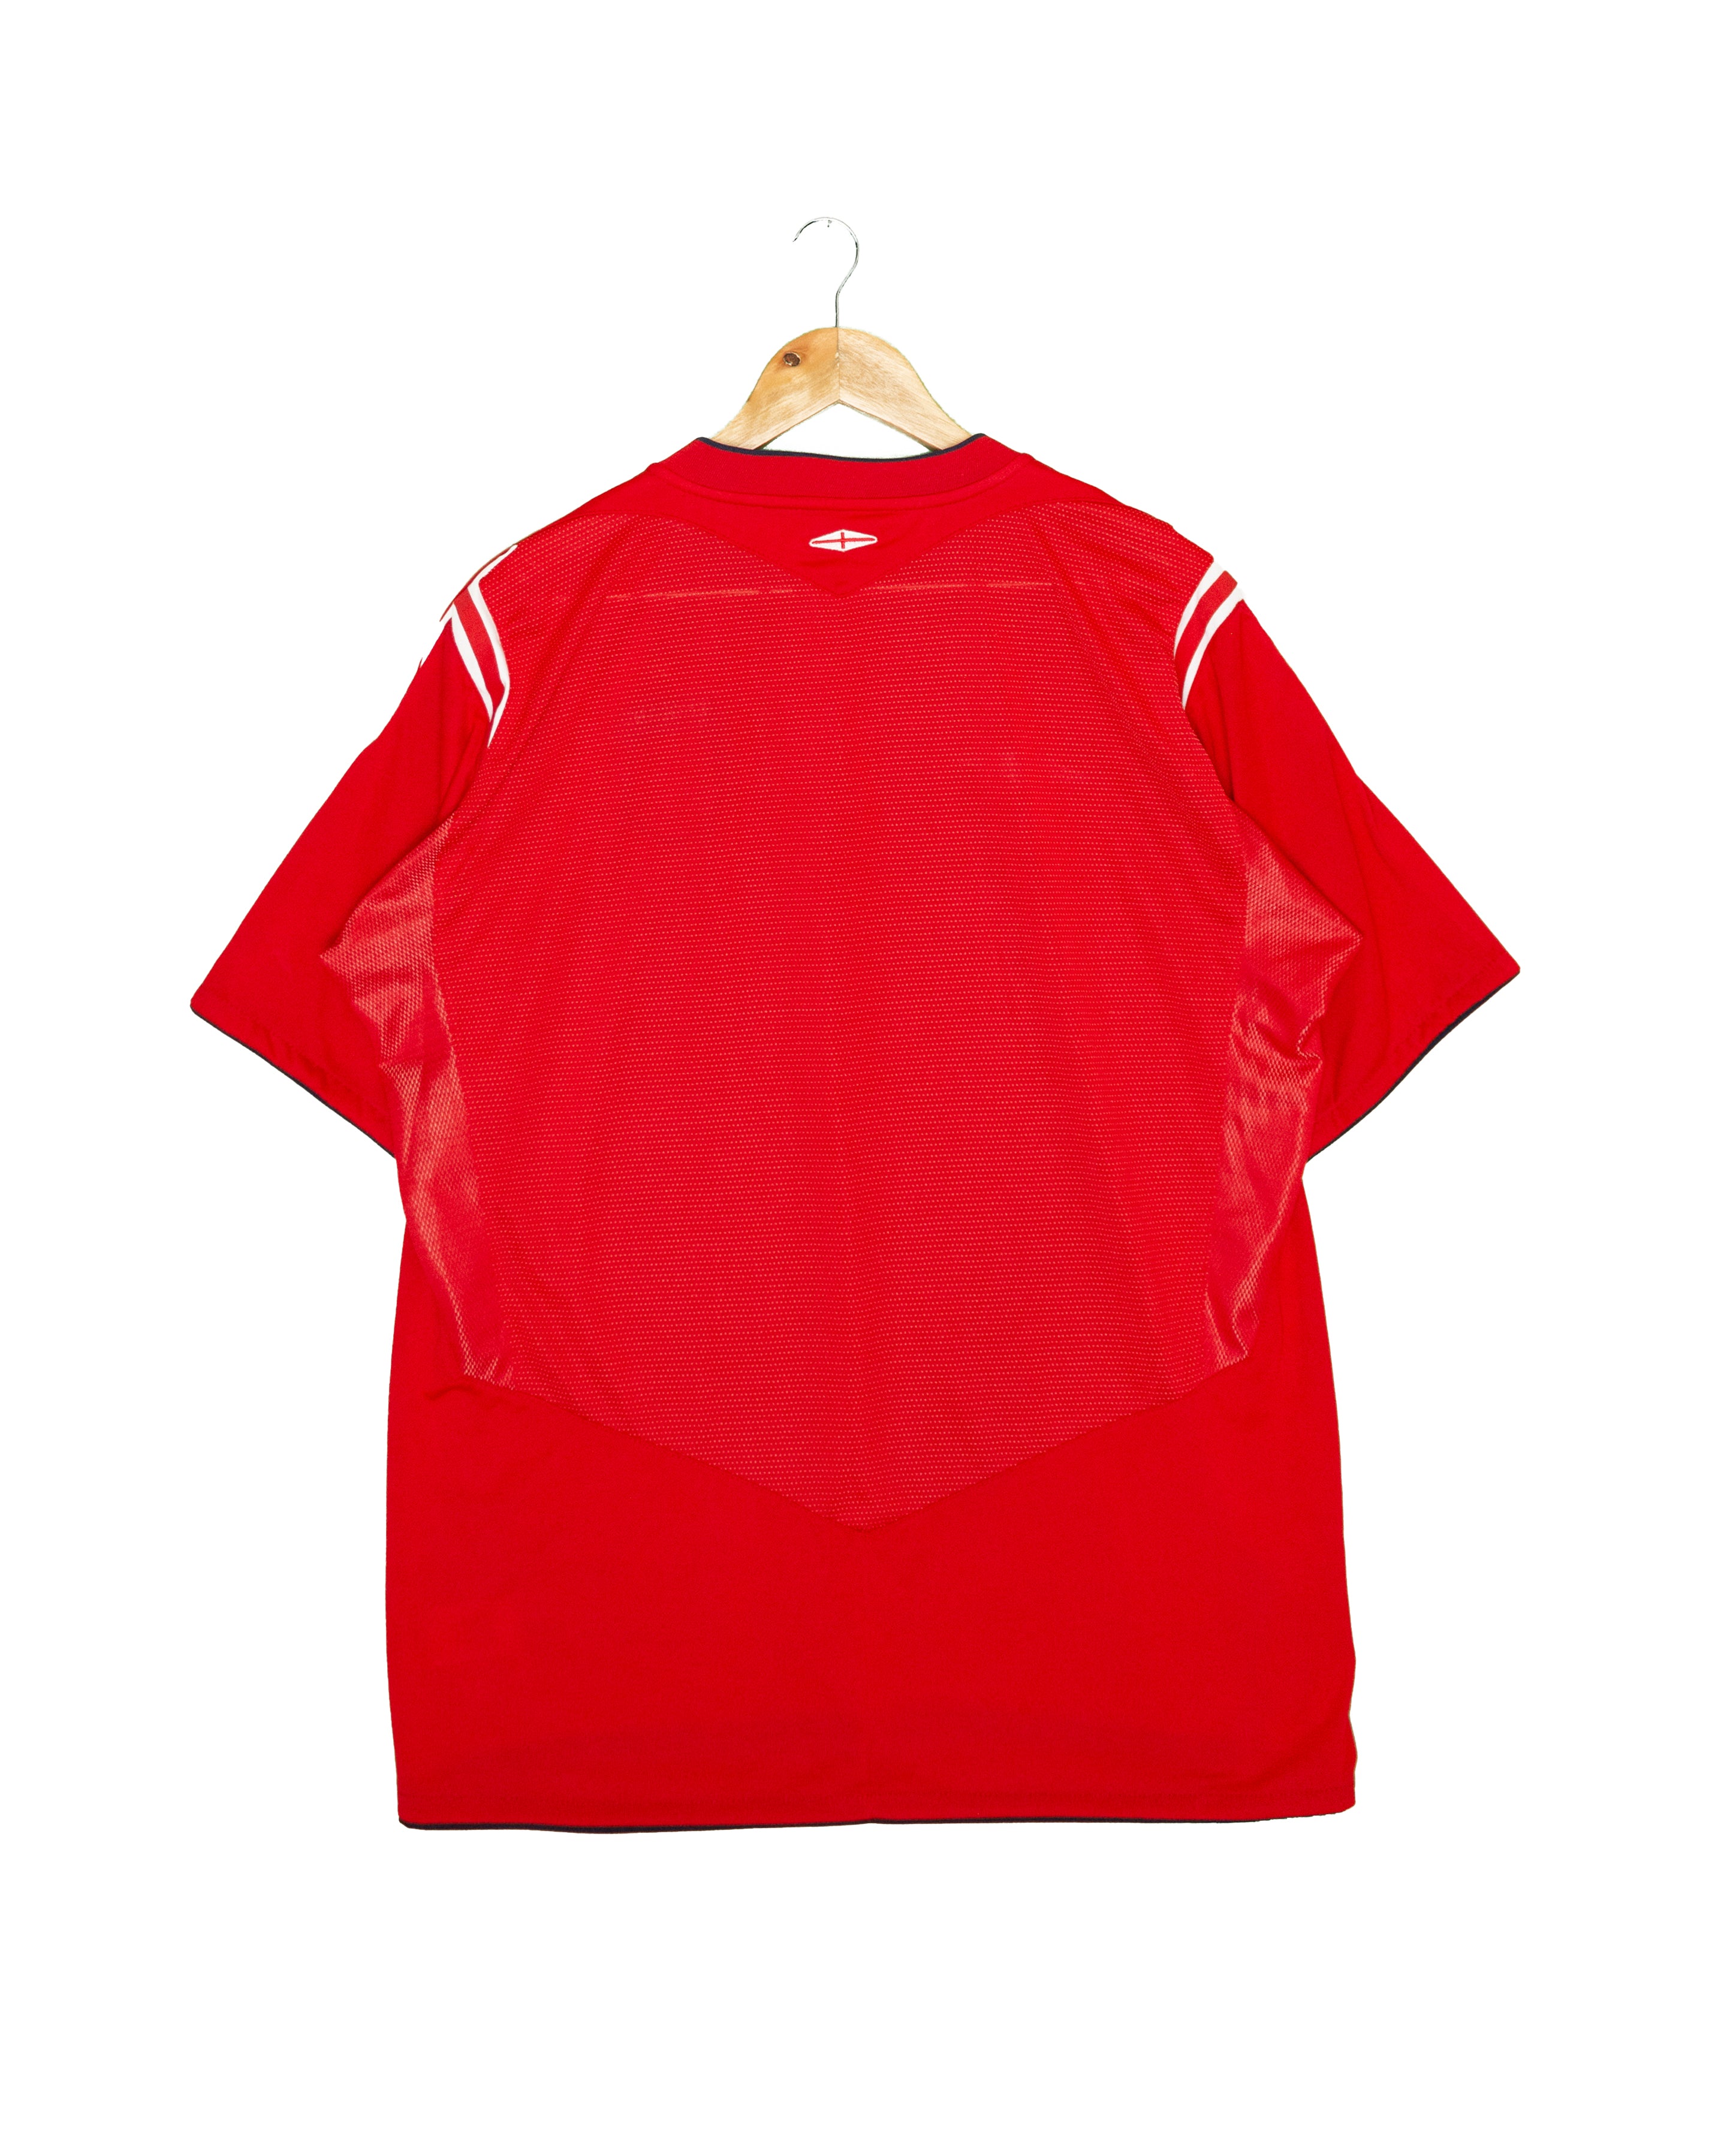 England 2004 Away Shirt - XL - #1901